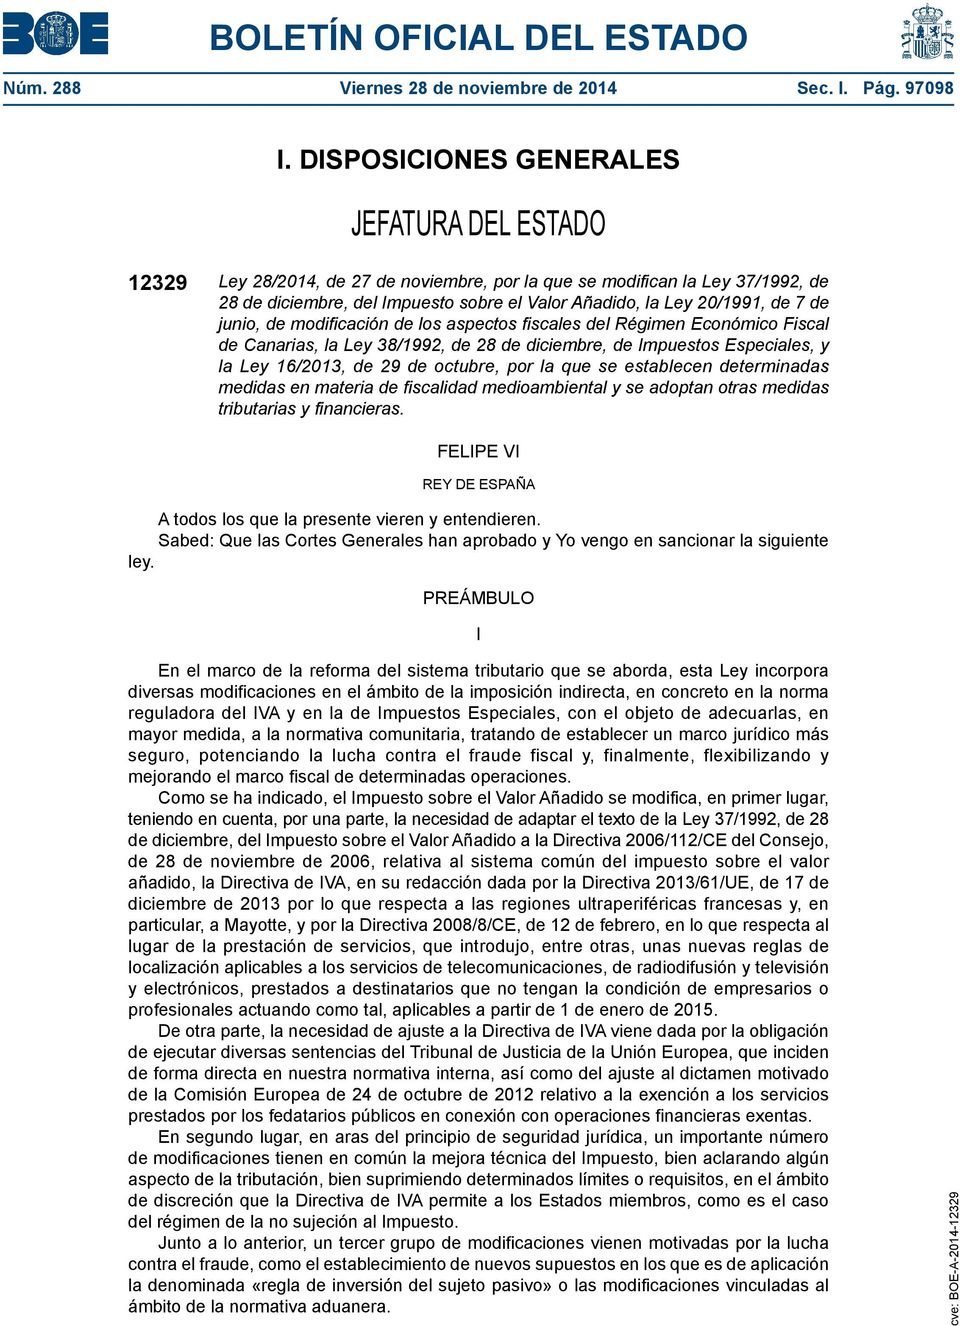 7 de junio, de modificación de los aspectos fiscales del Régimen Económico Fiscal de Canarias, la Ley 38/1992, de 28 de diciembre, de Impuestos Especiales, y la Ley 16/2013, de 29 de octubre, por la